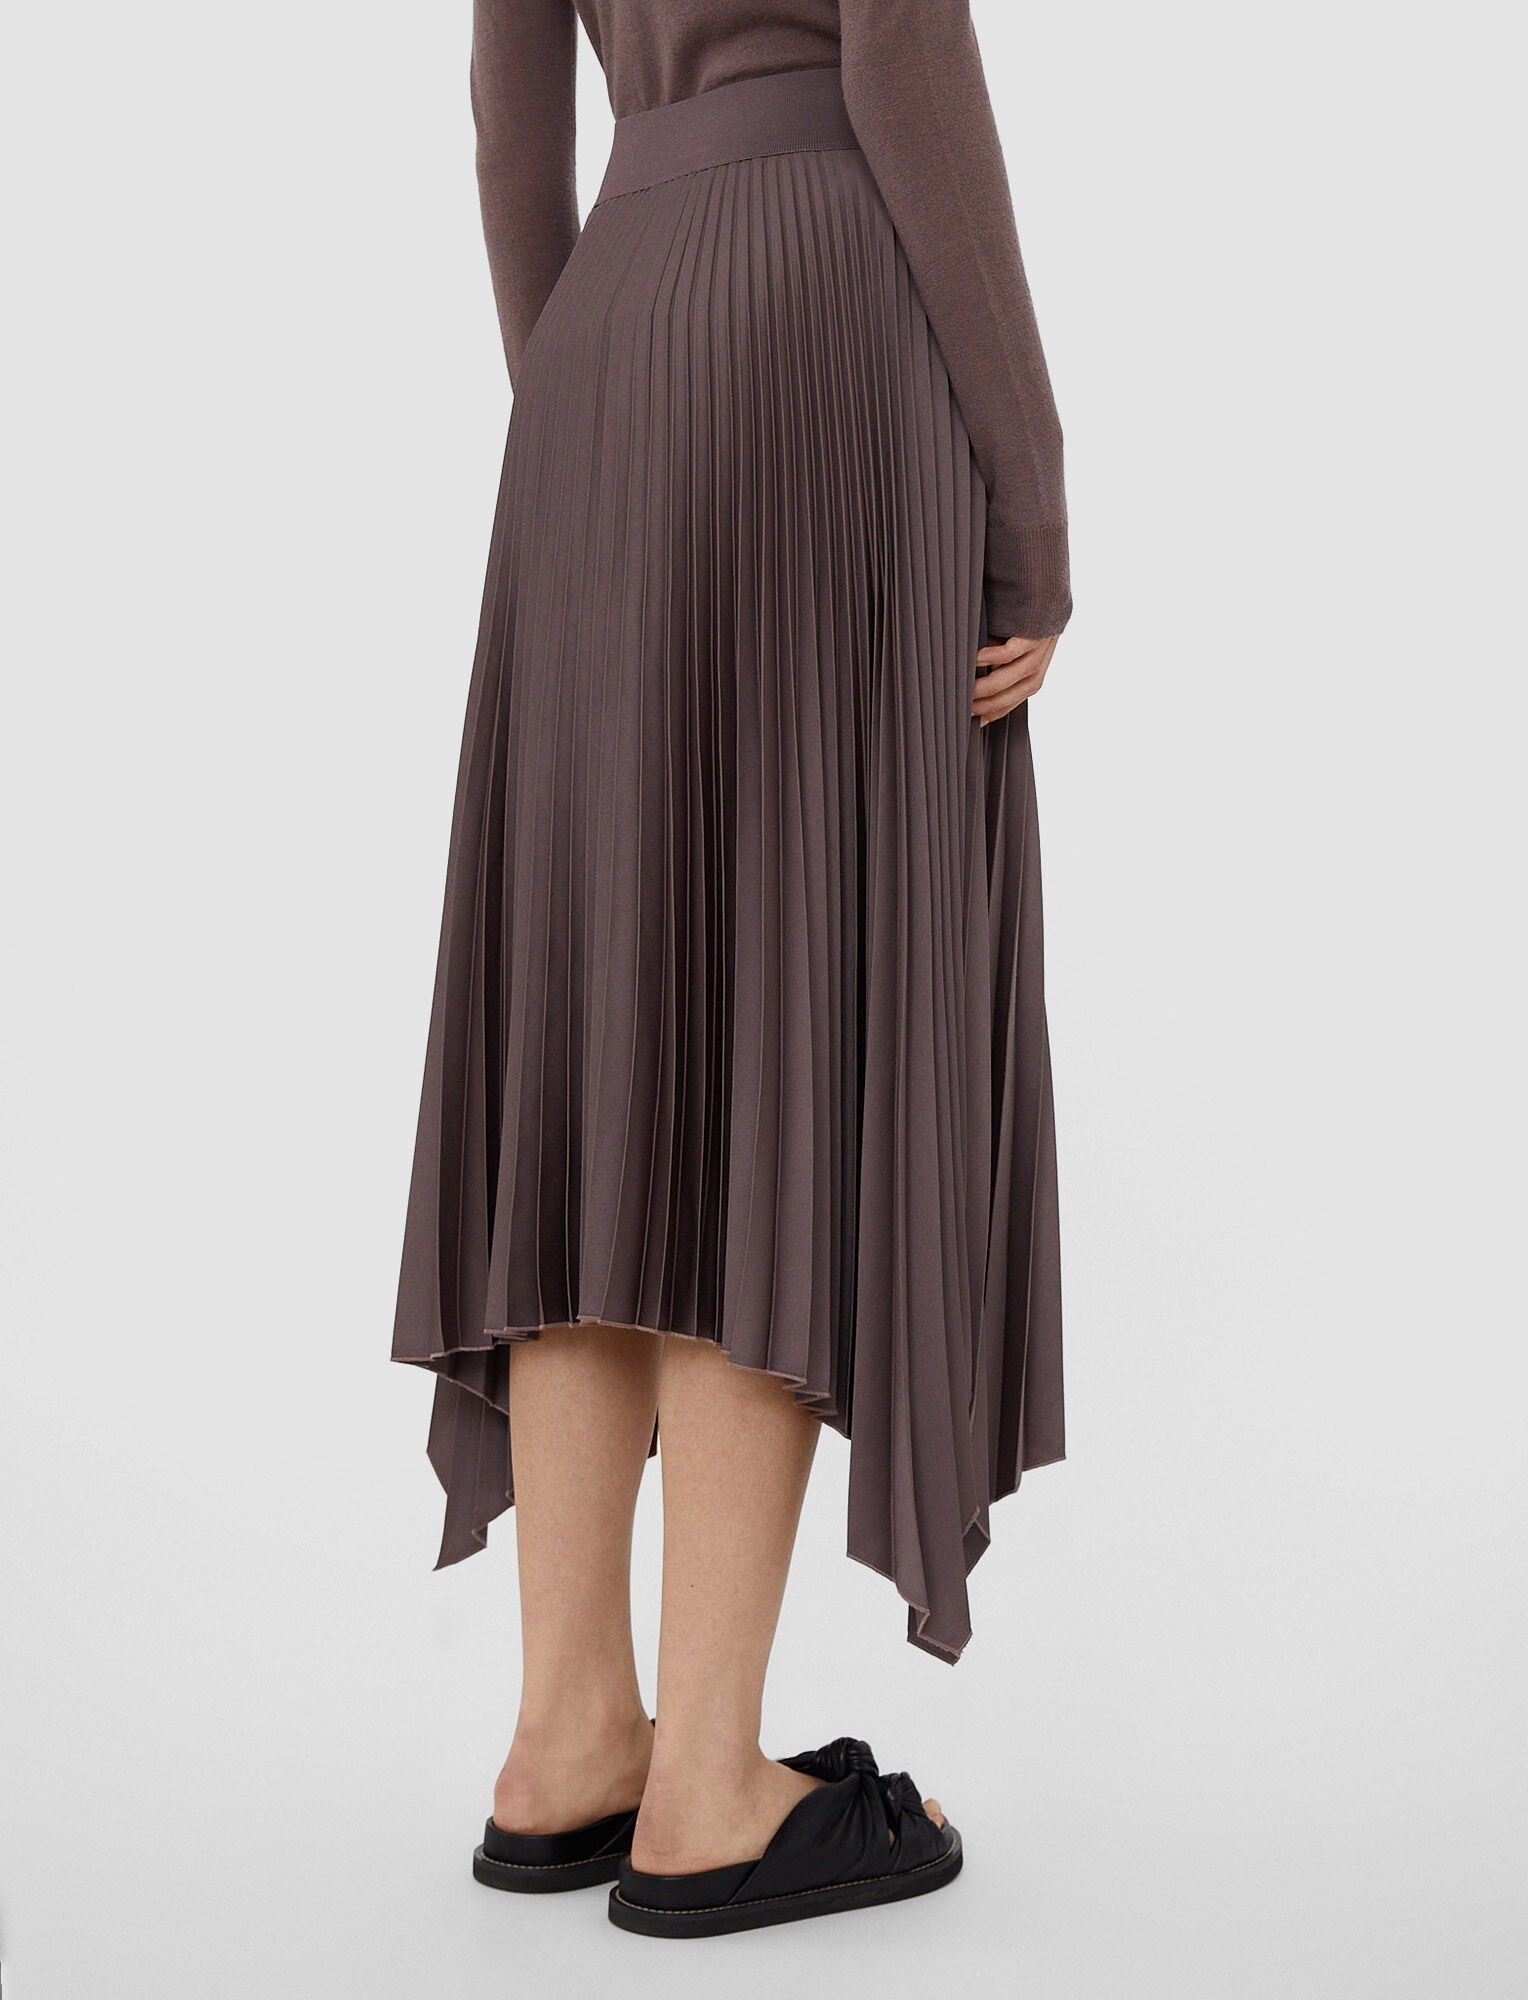 Joseph, Knit Weave Plisse Ade Skirt – Shorter Length, in Truffle